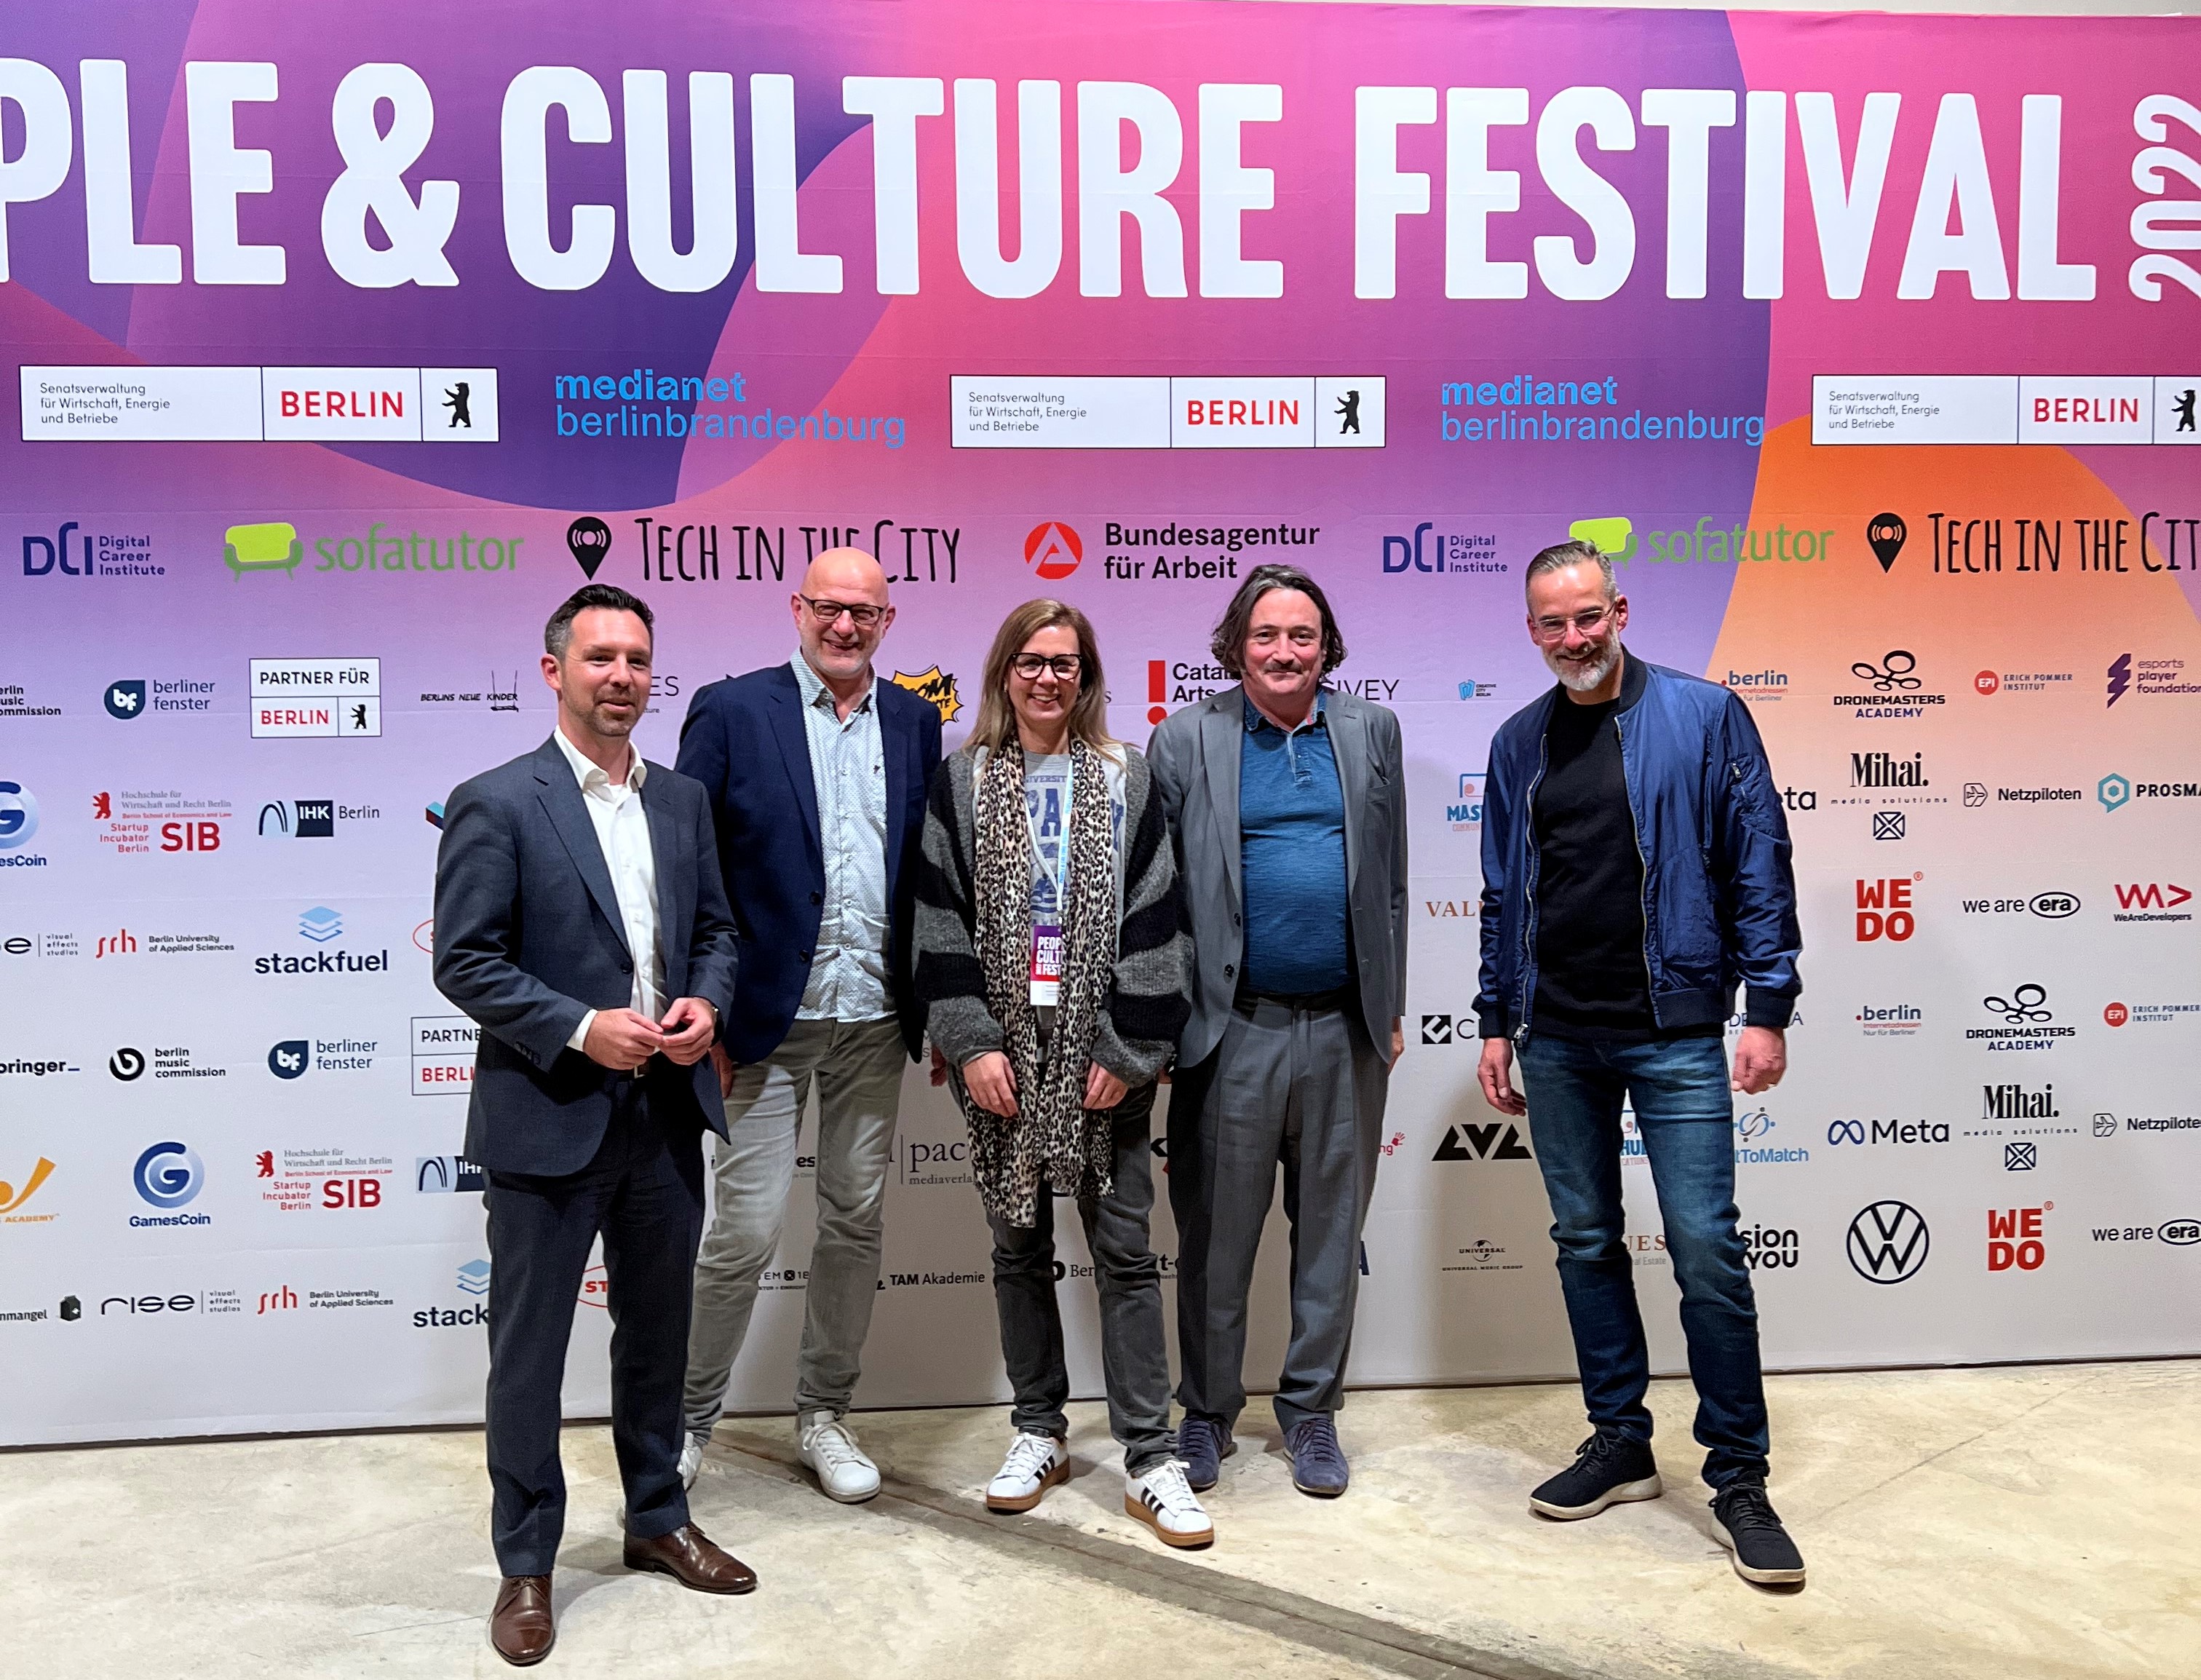 Premiere: People & Culture Festival in Berlin